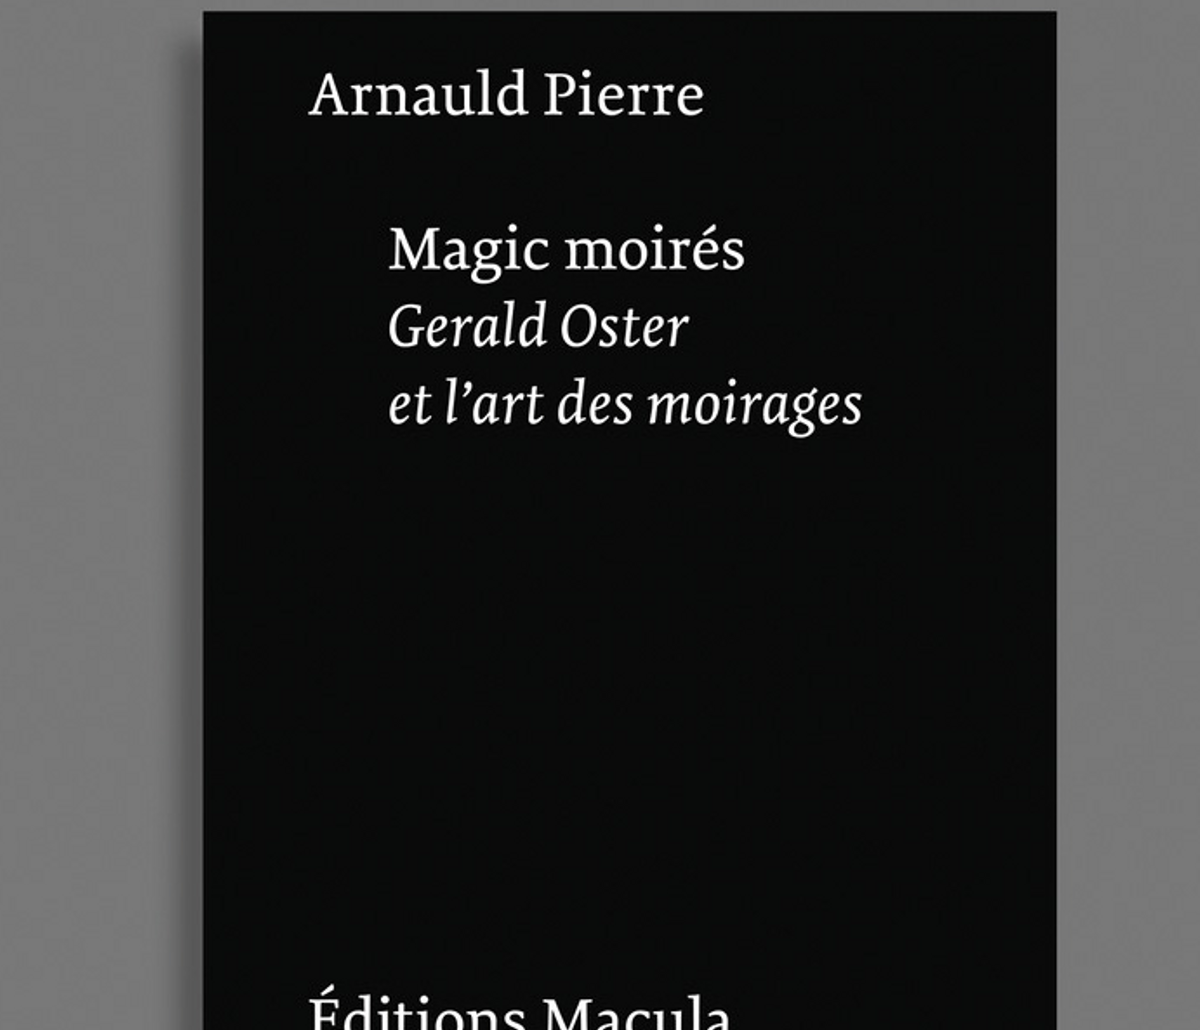 Arnauld Pierre, Magic Moirés. Gerald Oster et l’art des moirages, Paris, Éditions Macula, 2022, 224 pages, 26 euros.

D.R.